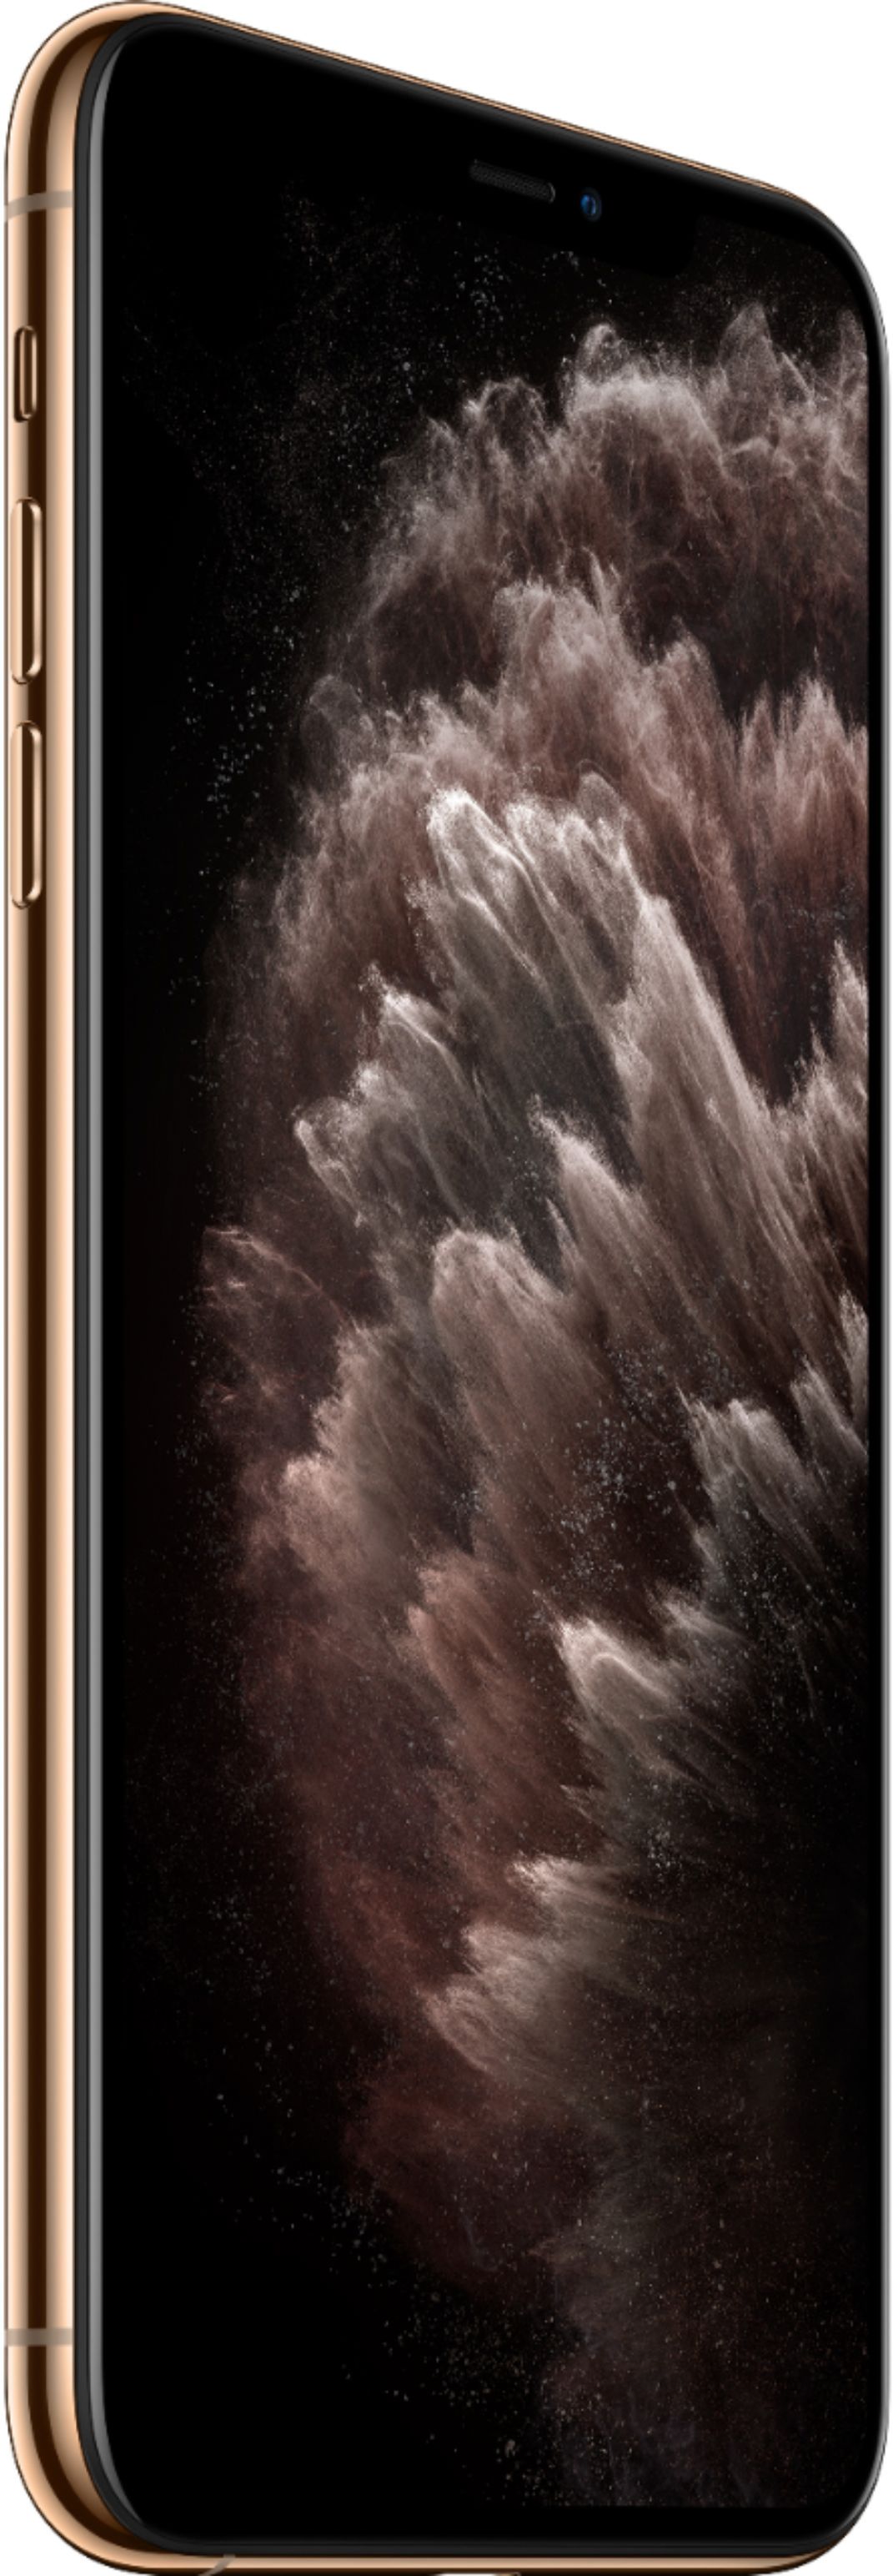 Best Buy: Apple iPhone 11 Pro Max 256GB (Unlocked) MWGM2LL/A